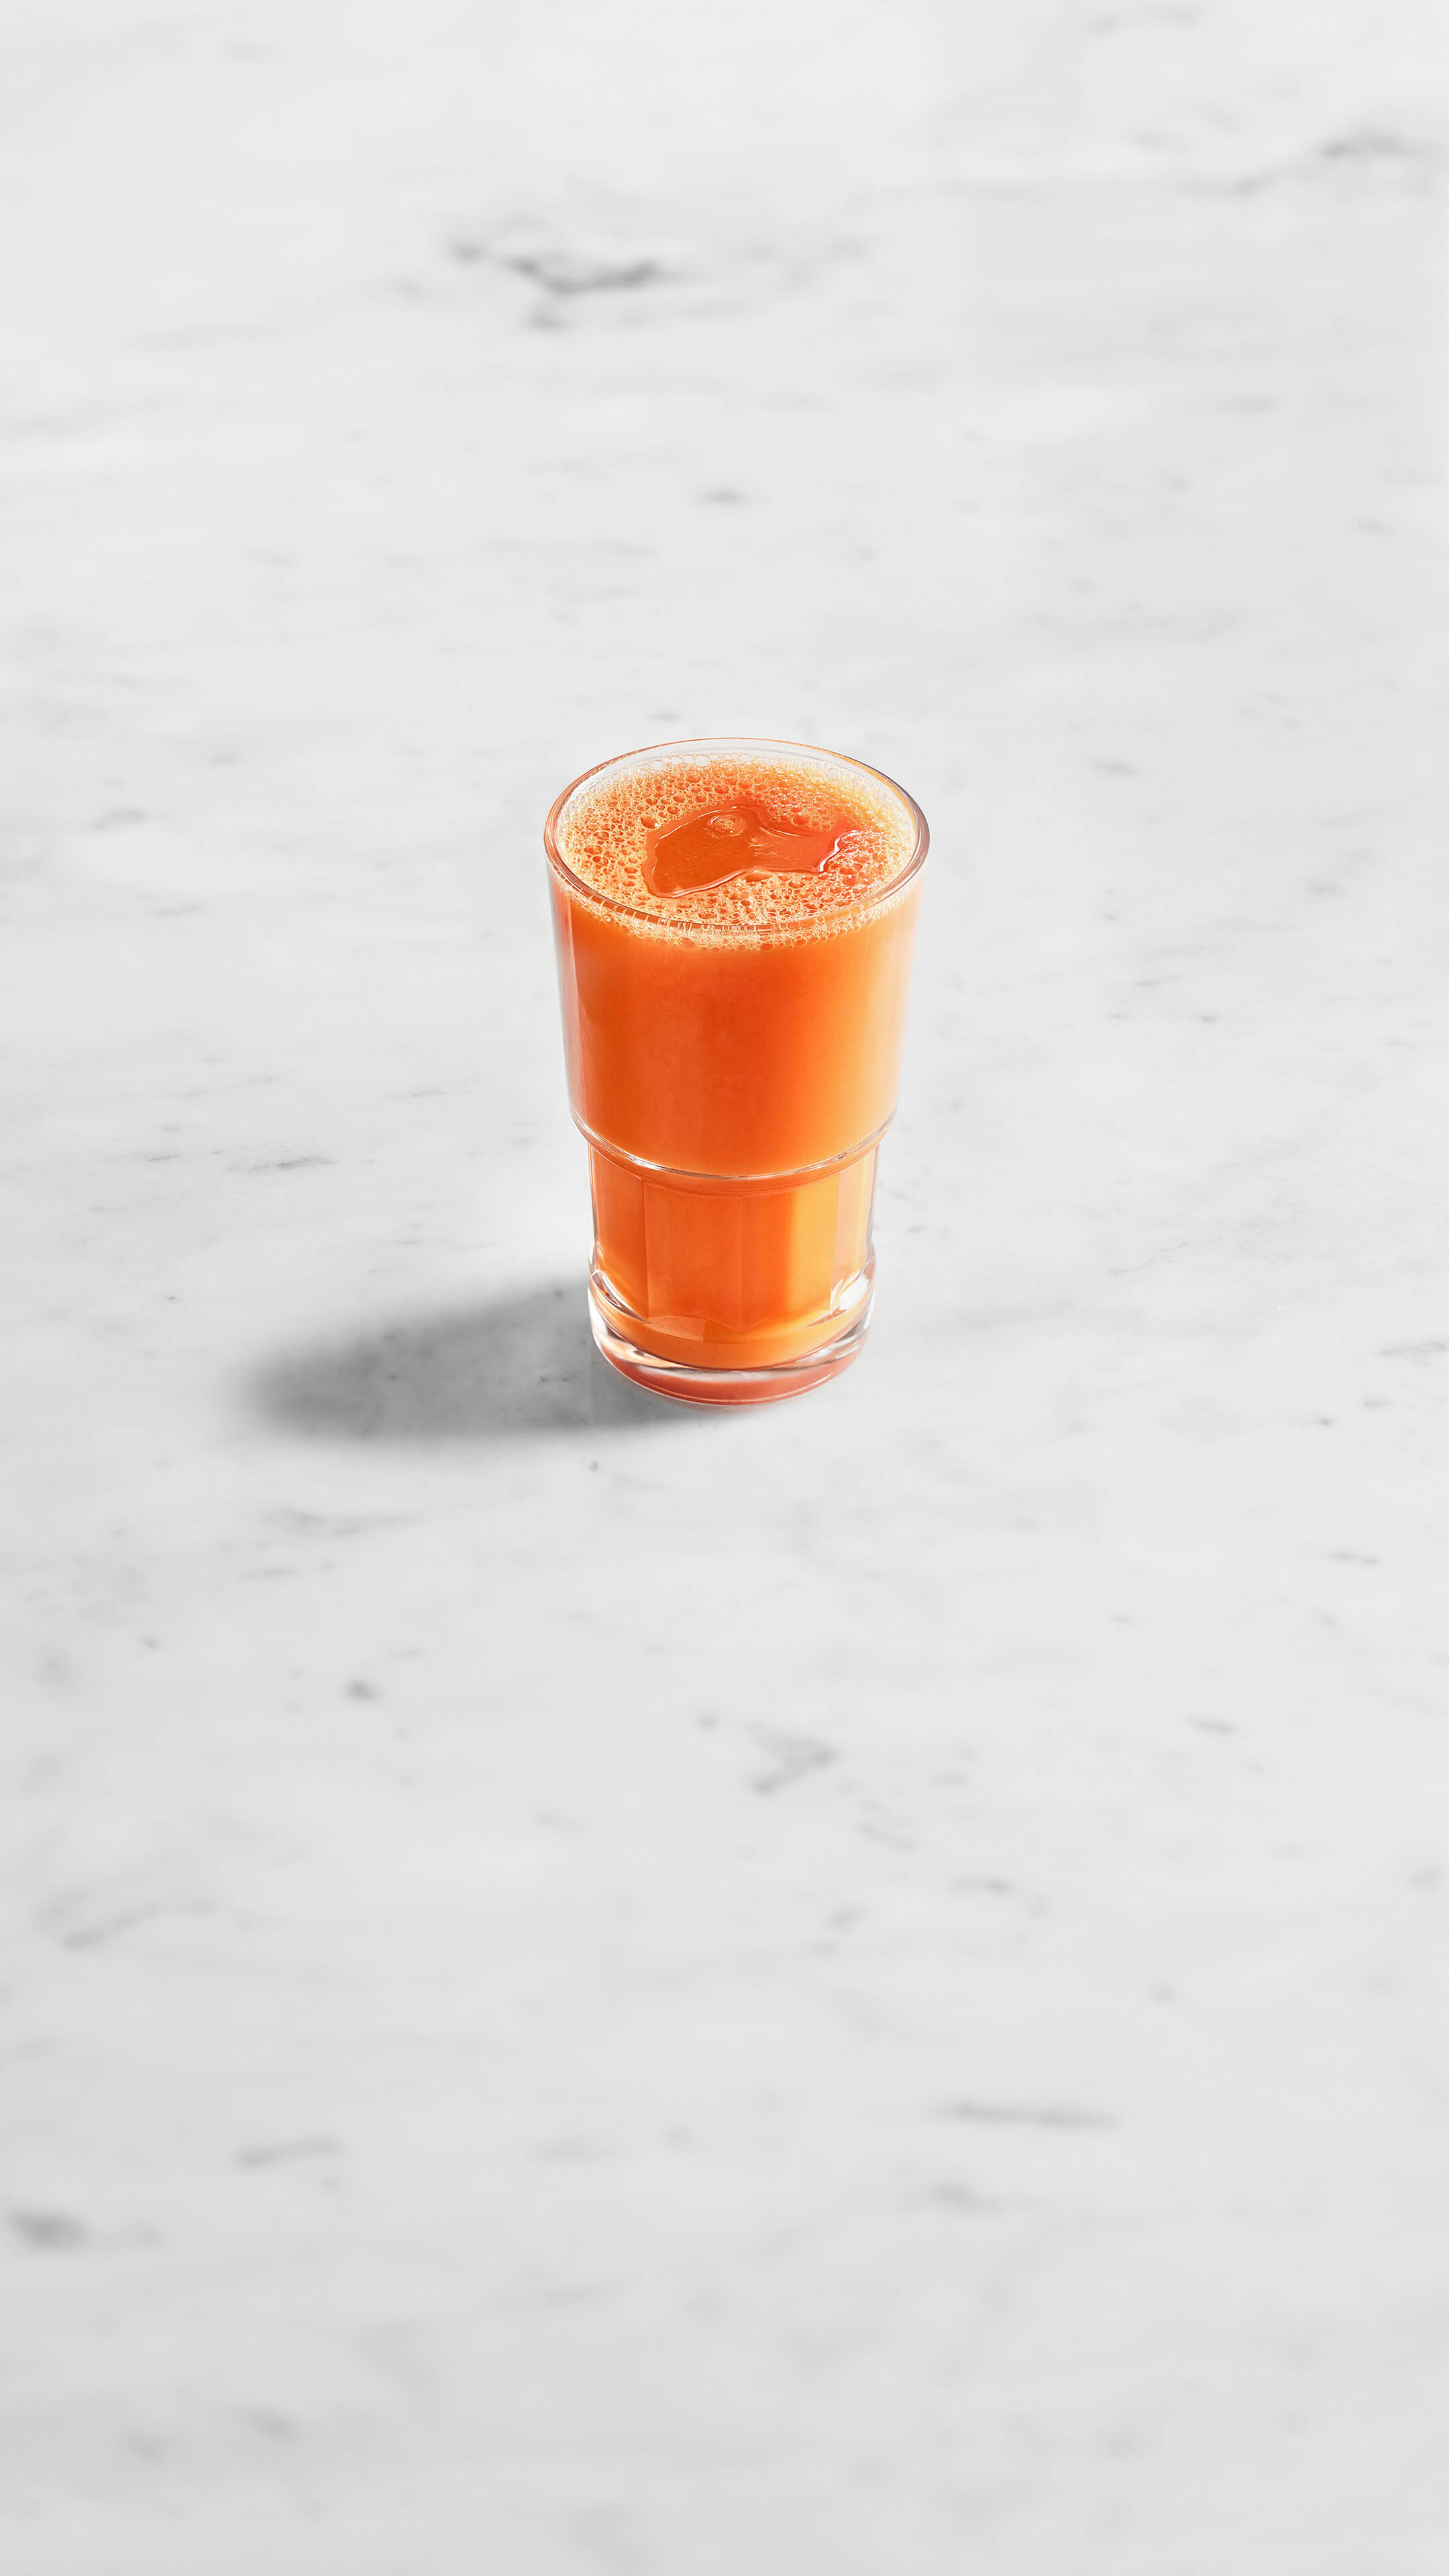 carrot juice